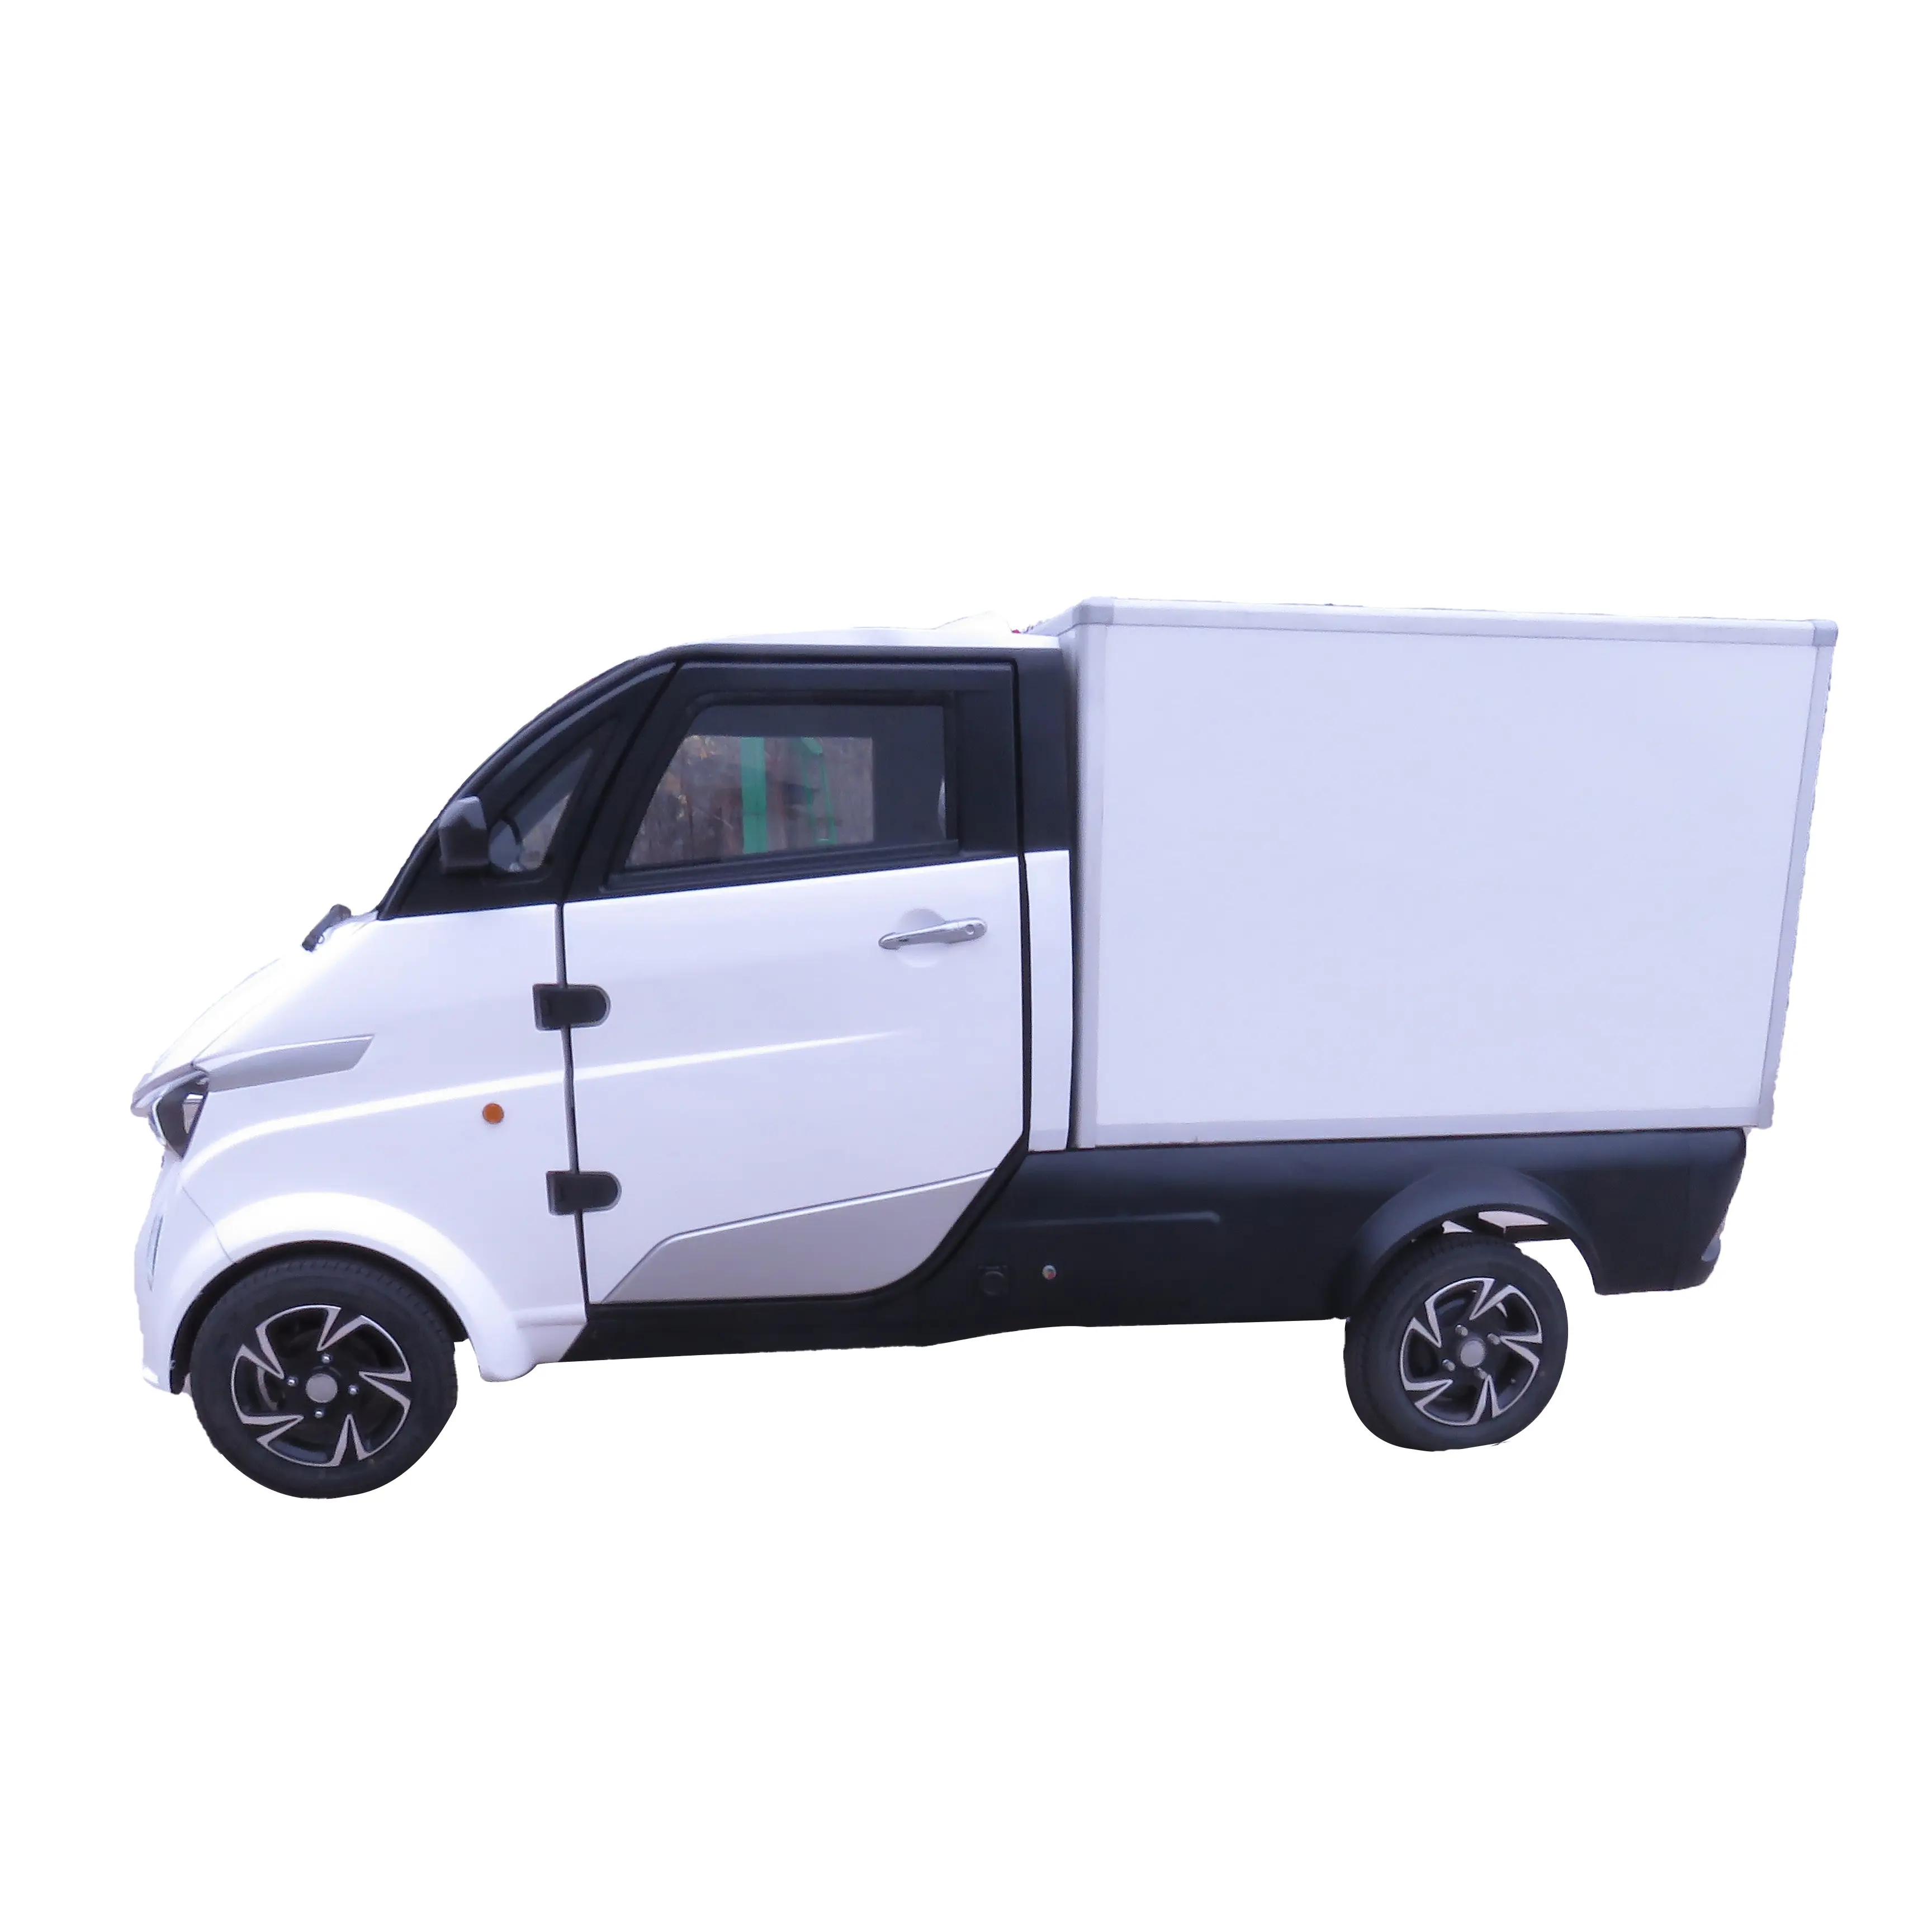 Mini camion électrique, chariot de livraison, livraison gratuite en chine